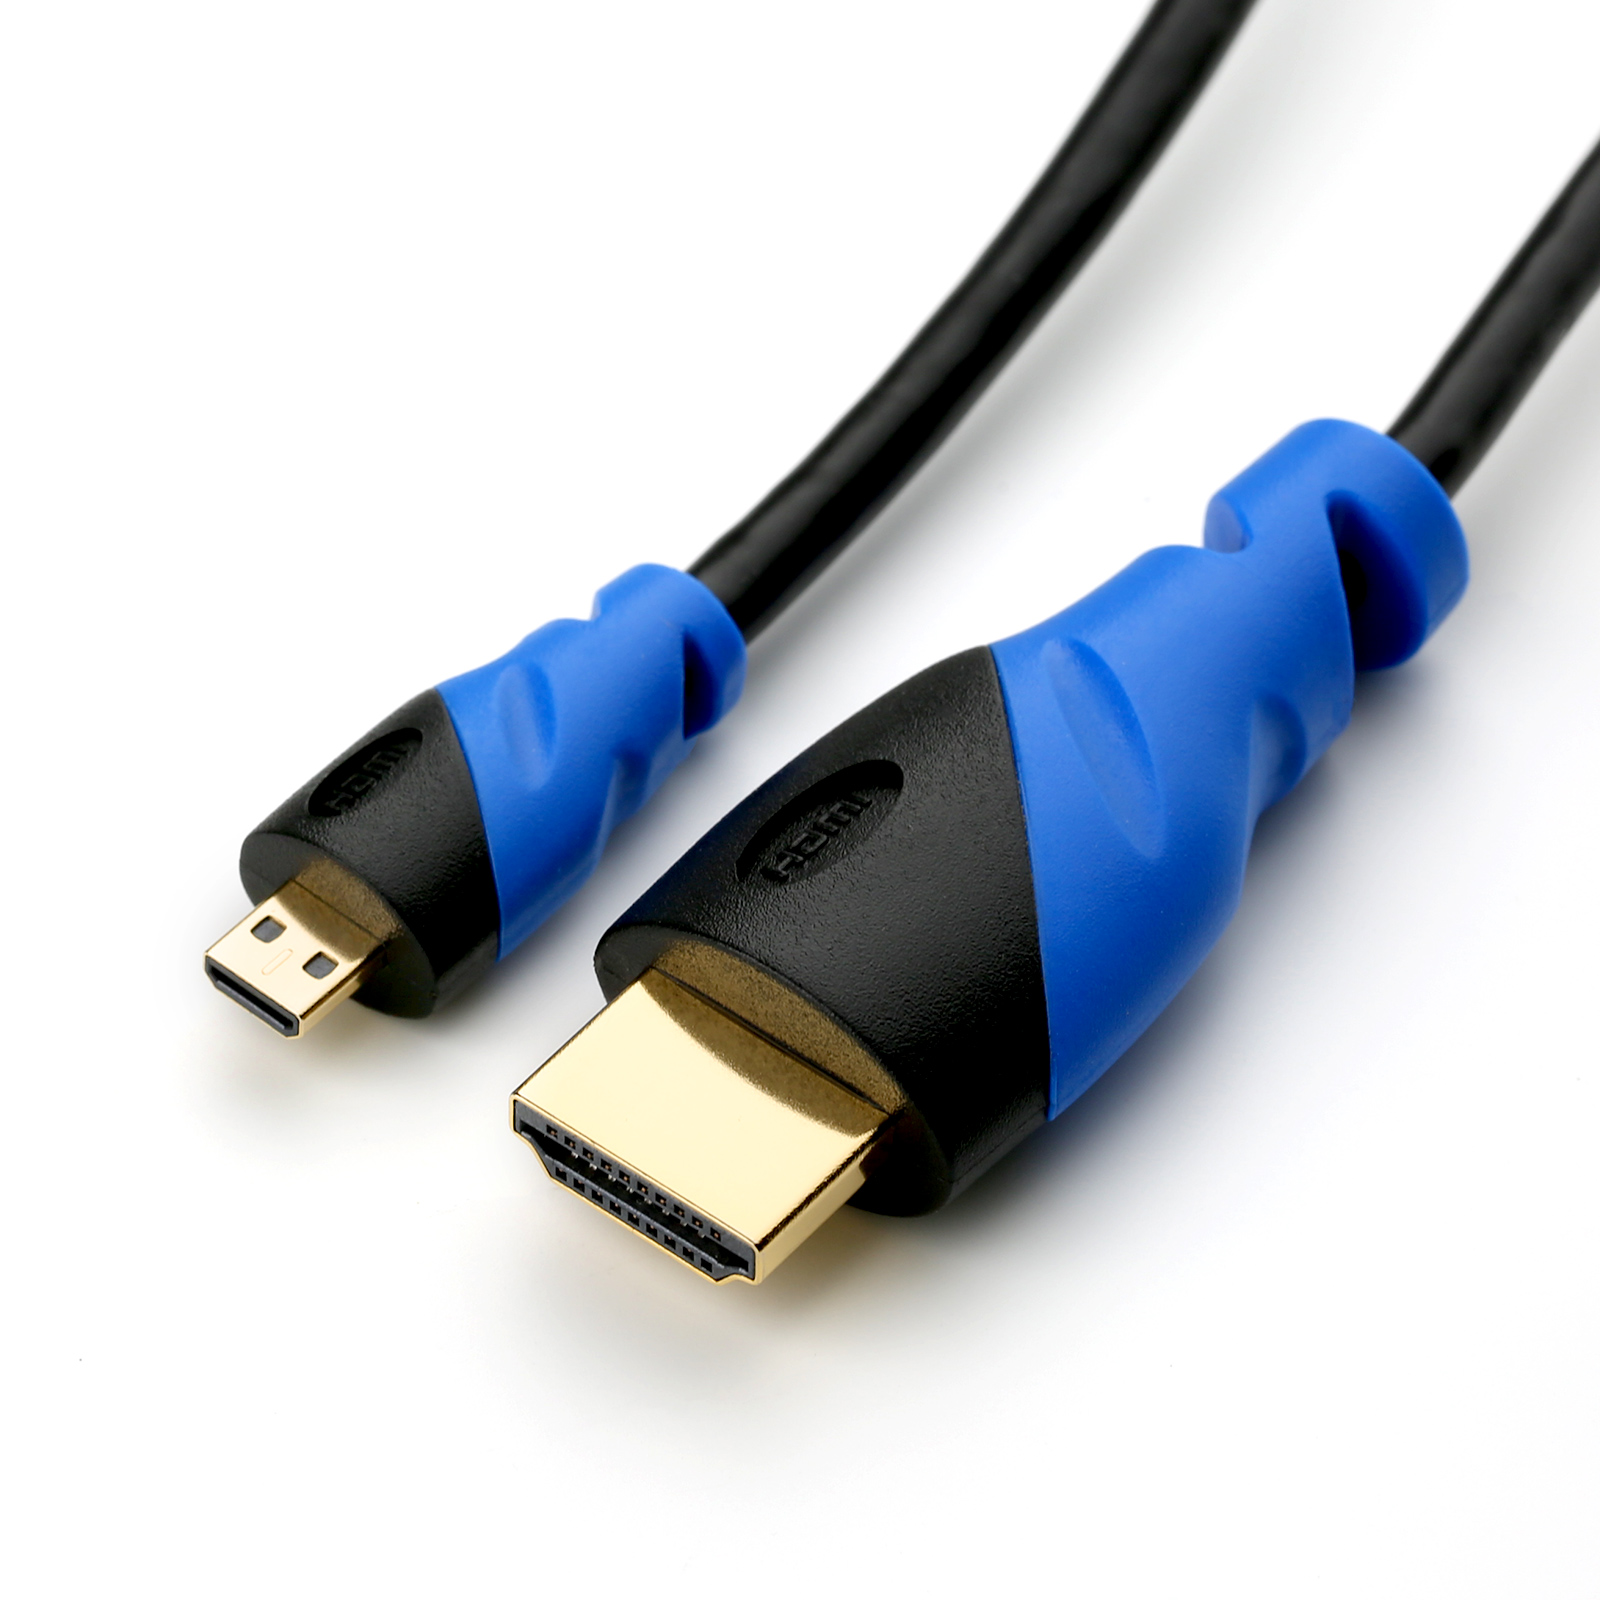 CSL microHDMI Kabel, 3m HDMI schwarz/blau Kabel